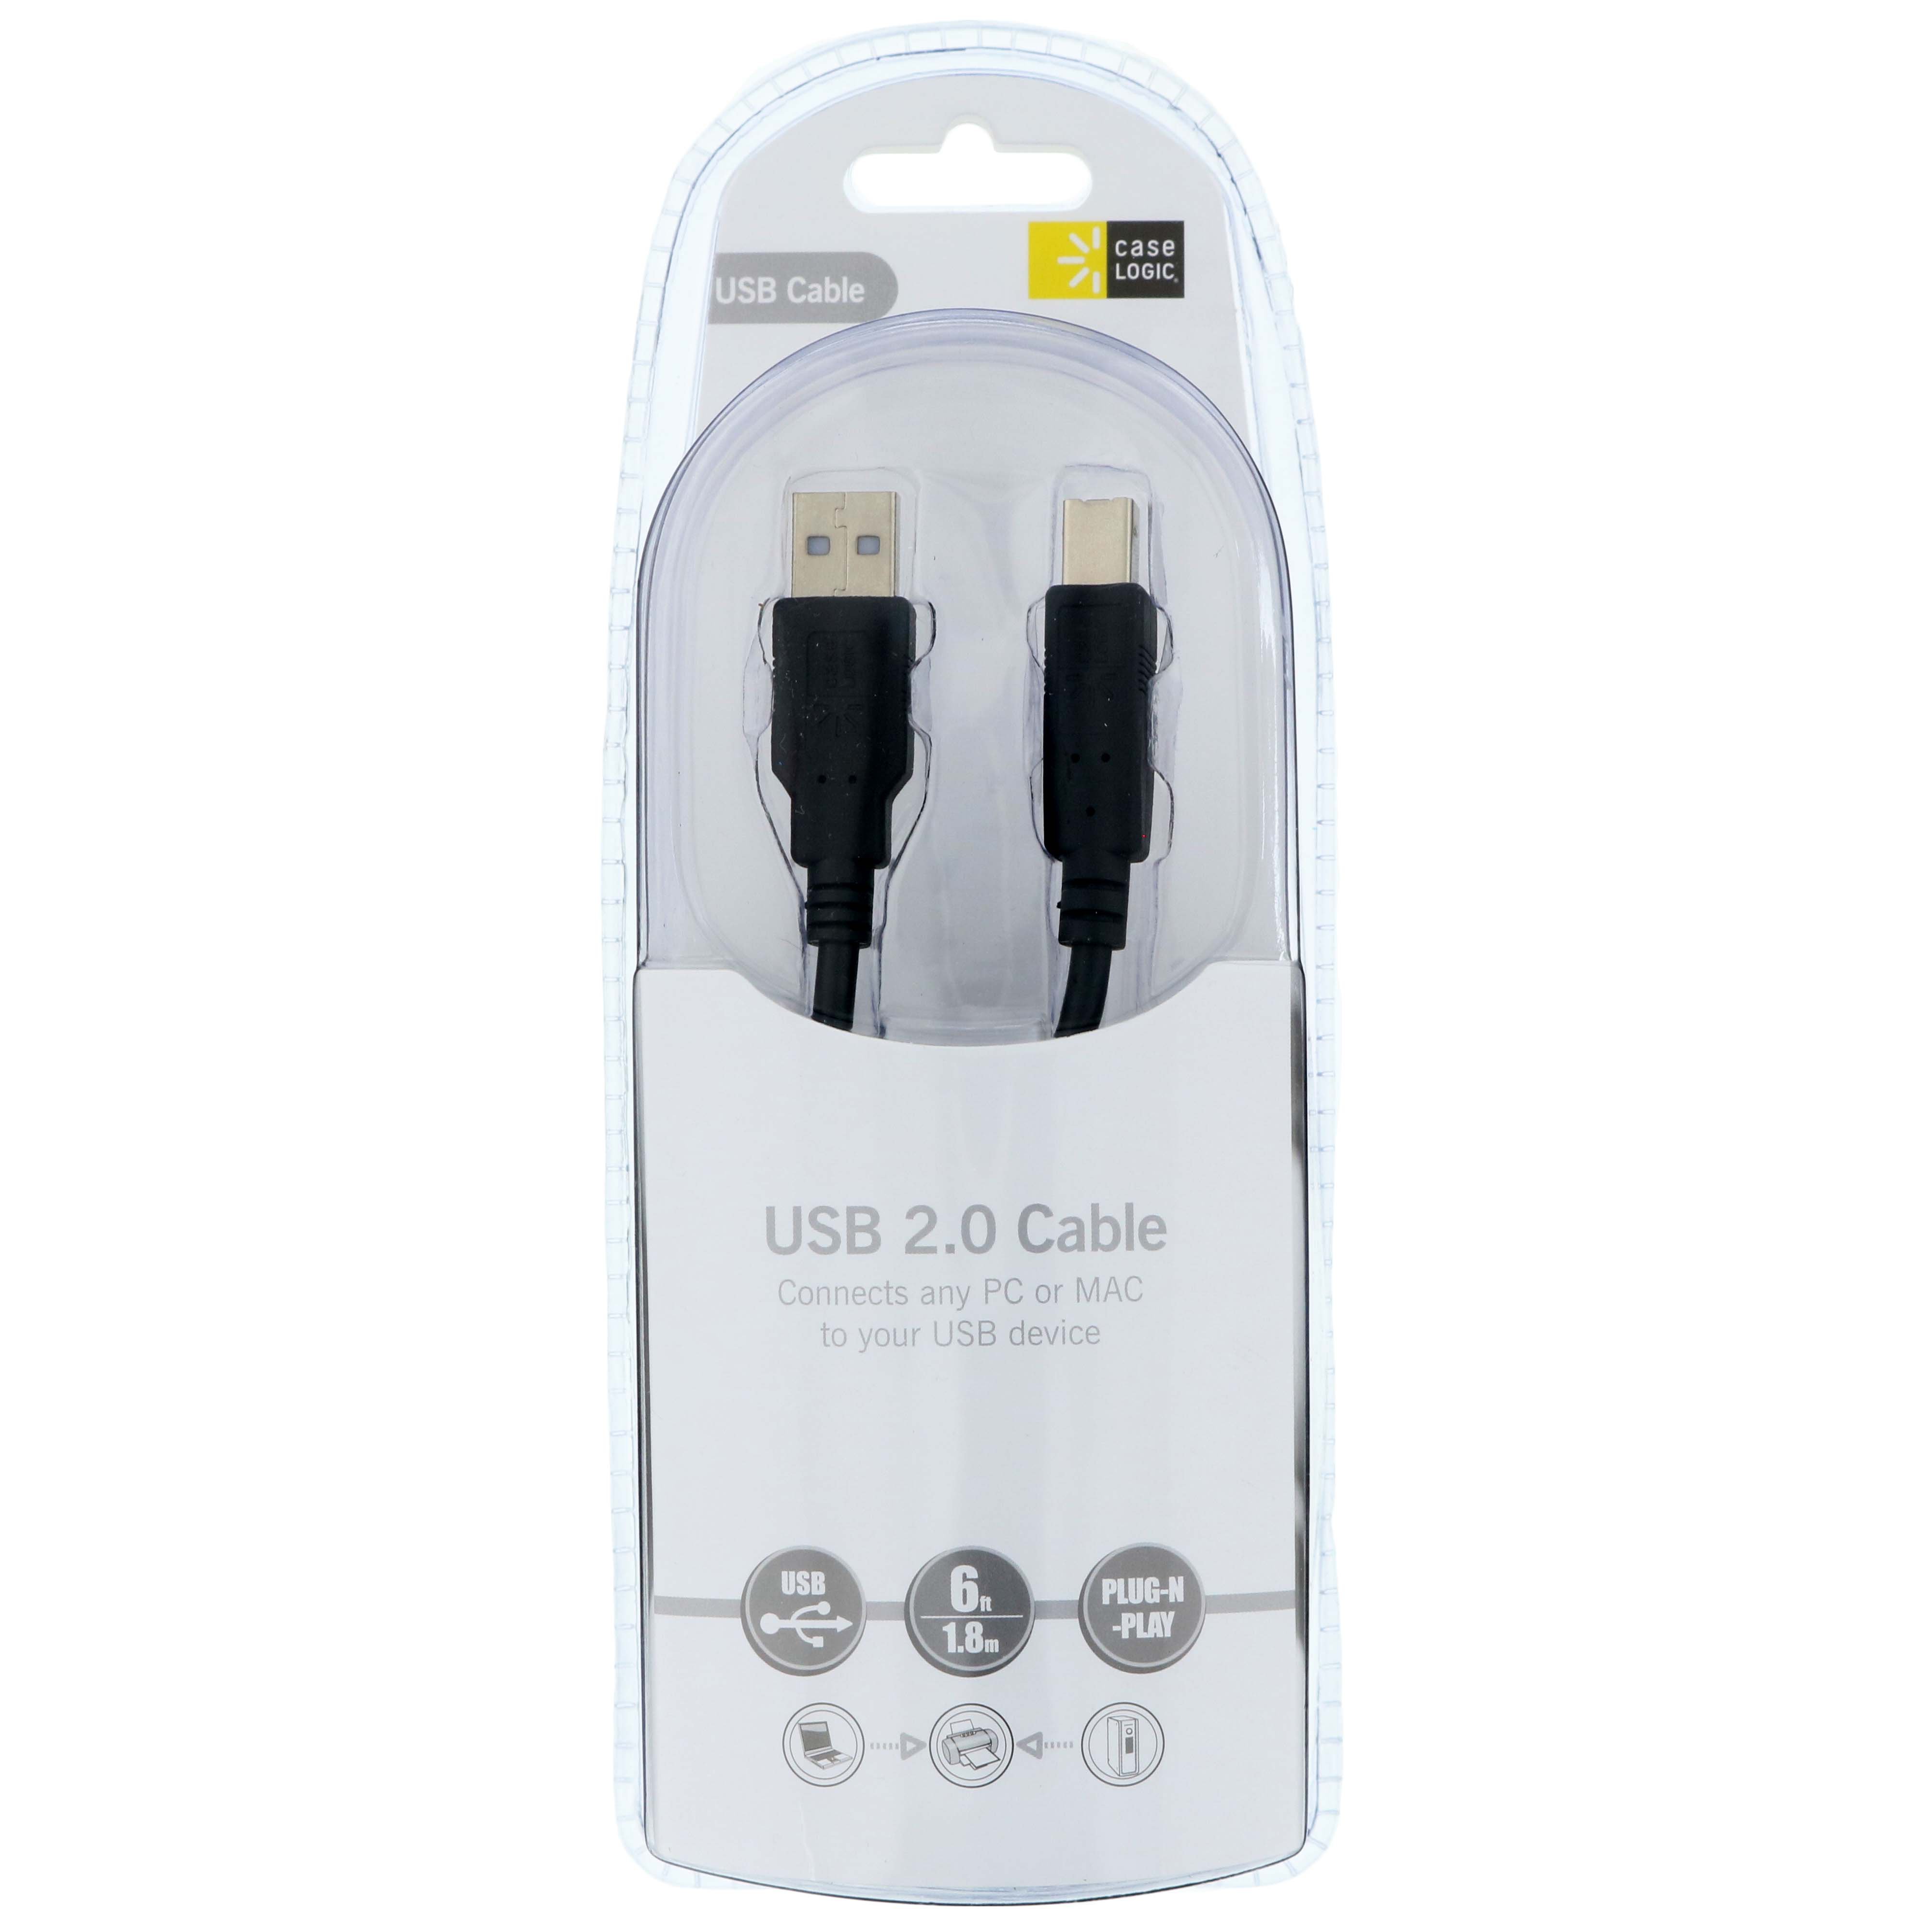 hyppigt skillevæg overrasket Case Logic USB 2.0 Printer Cable - Shop Connection Cables at H-E-B